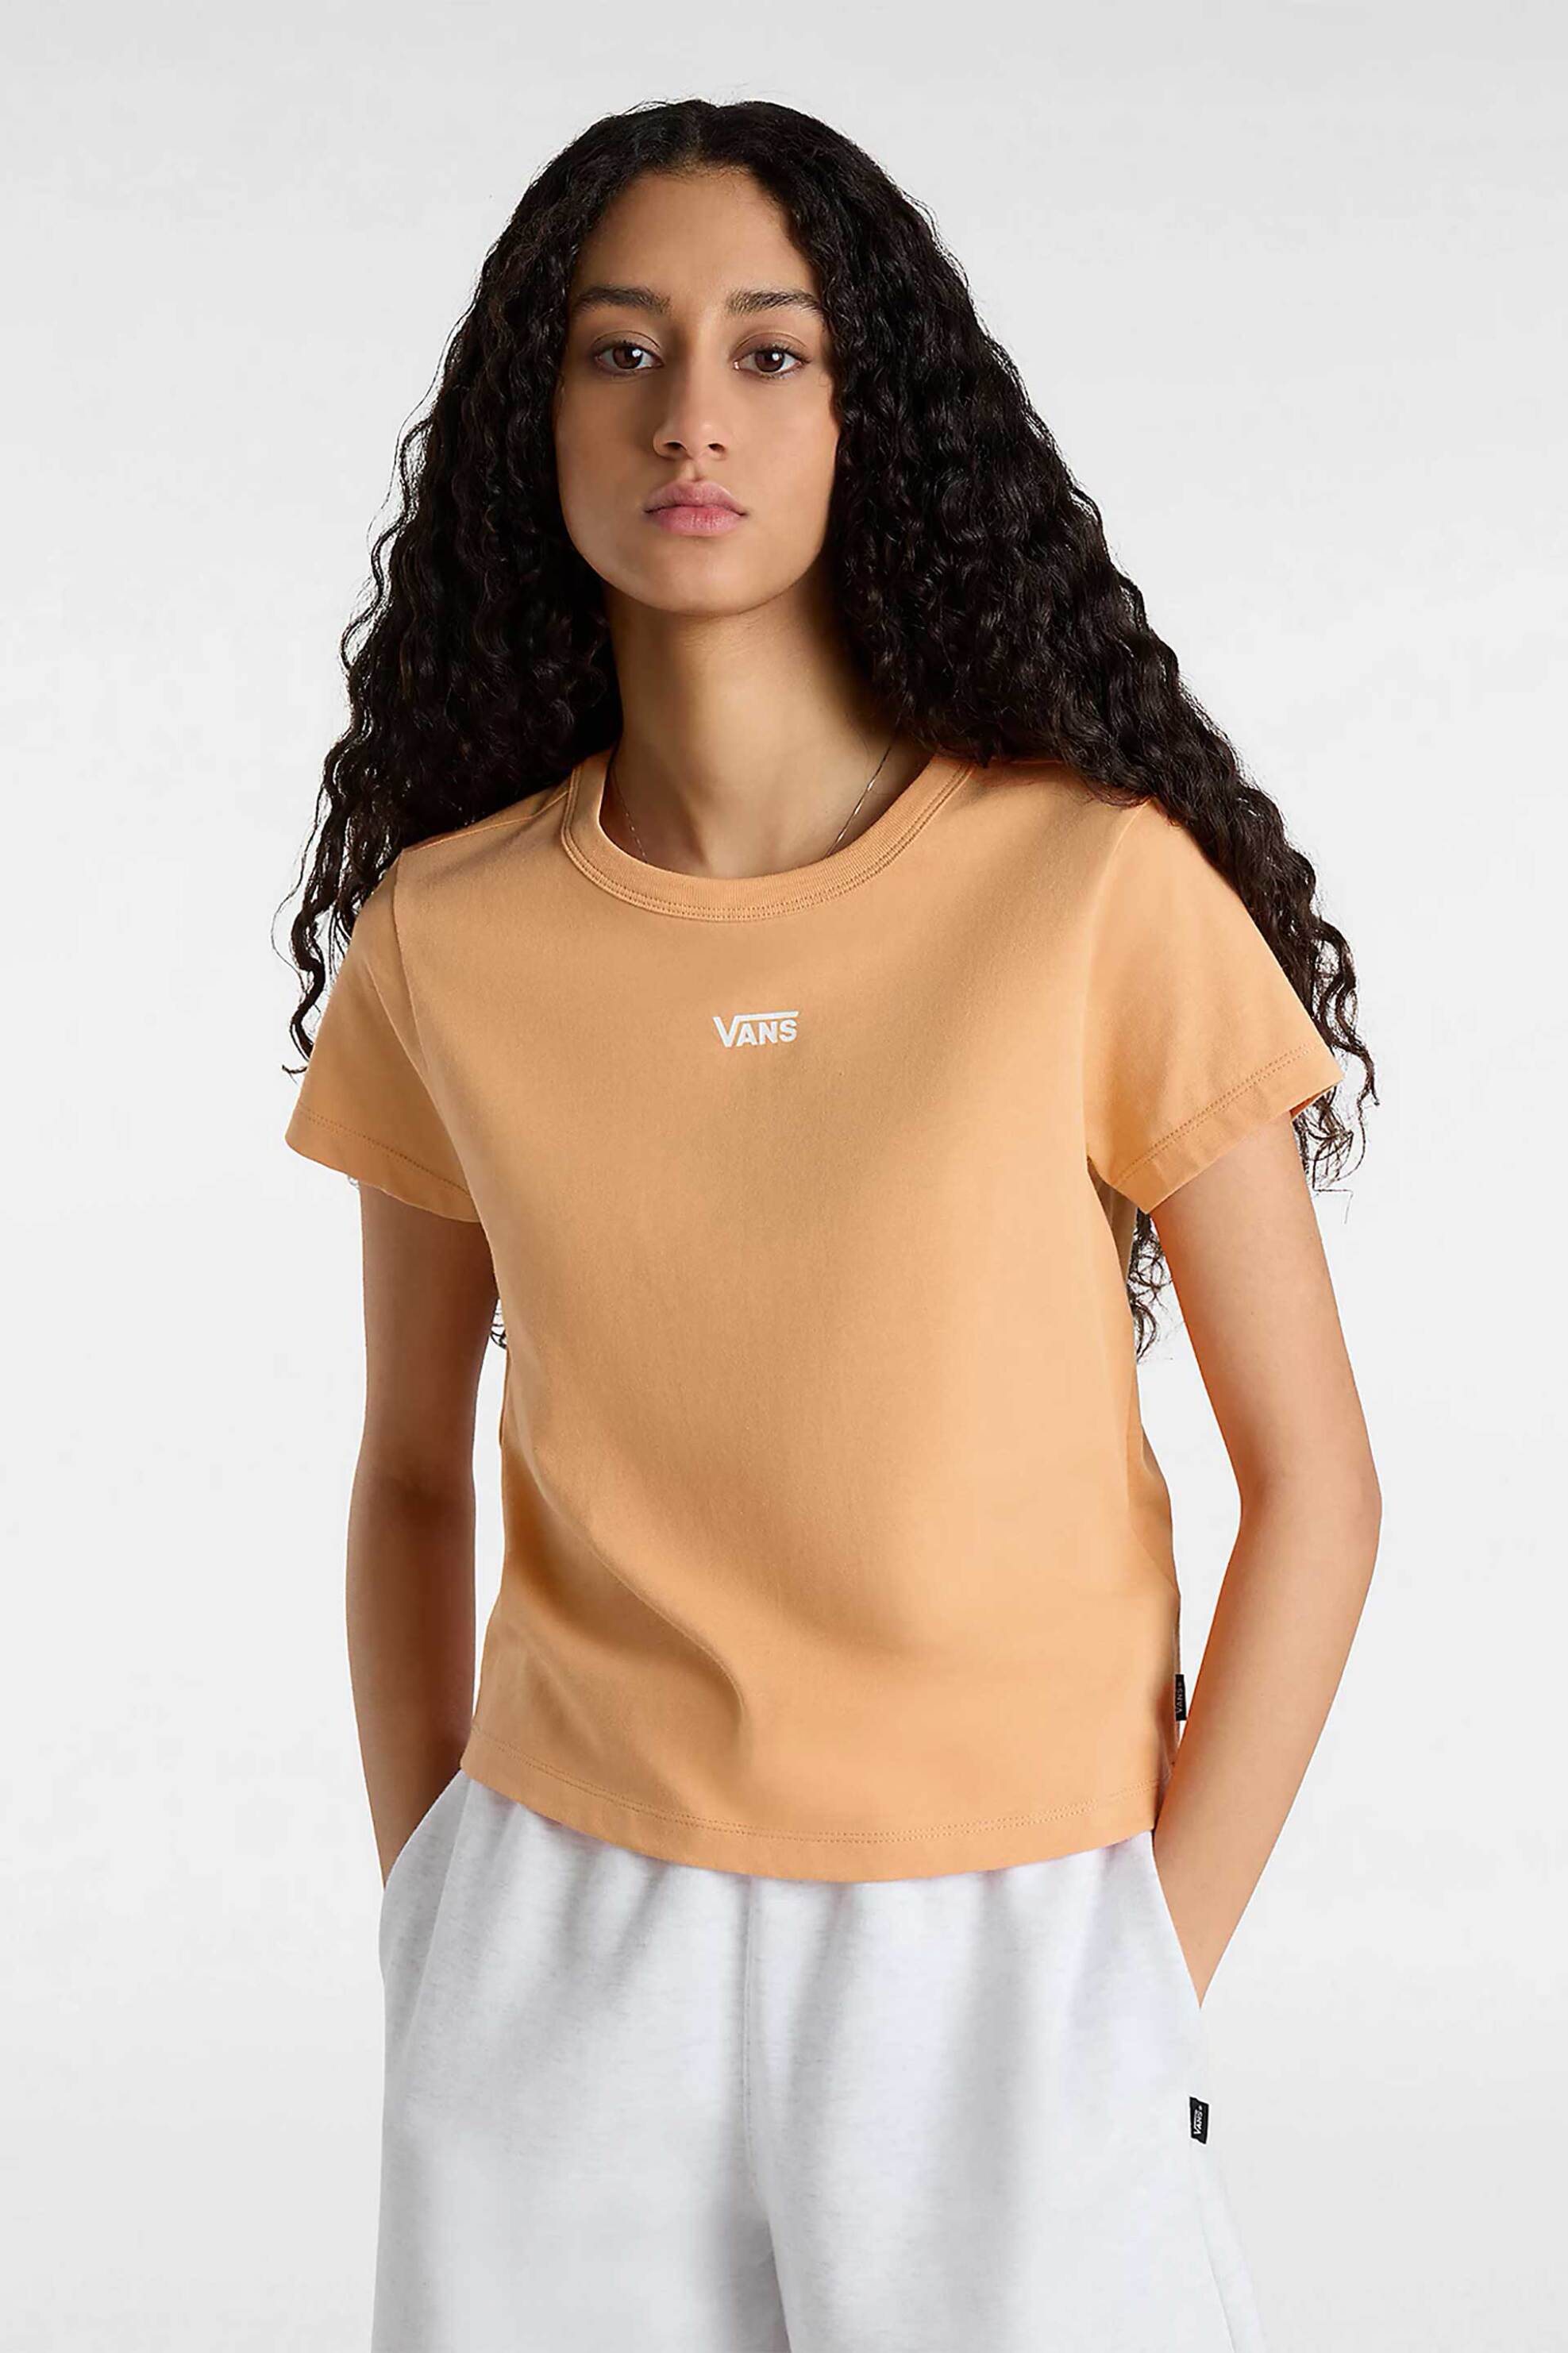 Γυναικεία Ρούχα & Αξεσουάρ > Γυναικεία Ρούχα > Γυναικεία Τοπ > Γυναικεία T-Shirts Vans γυναικείο βαμβακερό T-shirt με contrast logo print μονόχρωμο "Basic Mini" - VN000JDQCR51 Πορτοκαλί